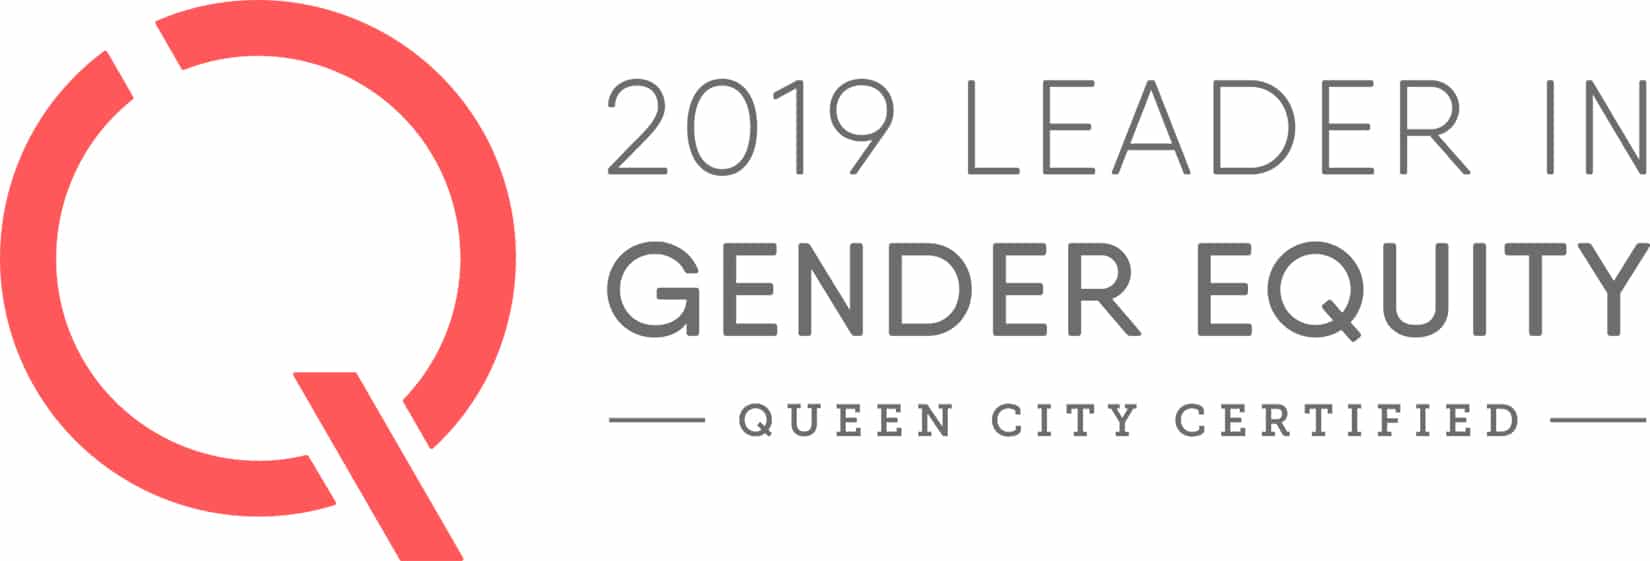 2019 Leader in Gender Equity logo